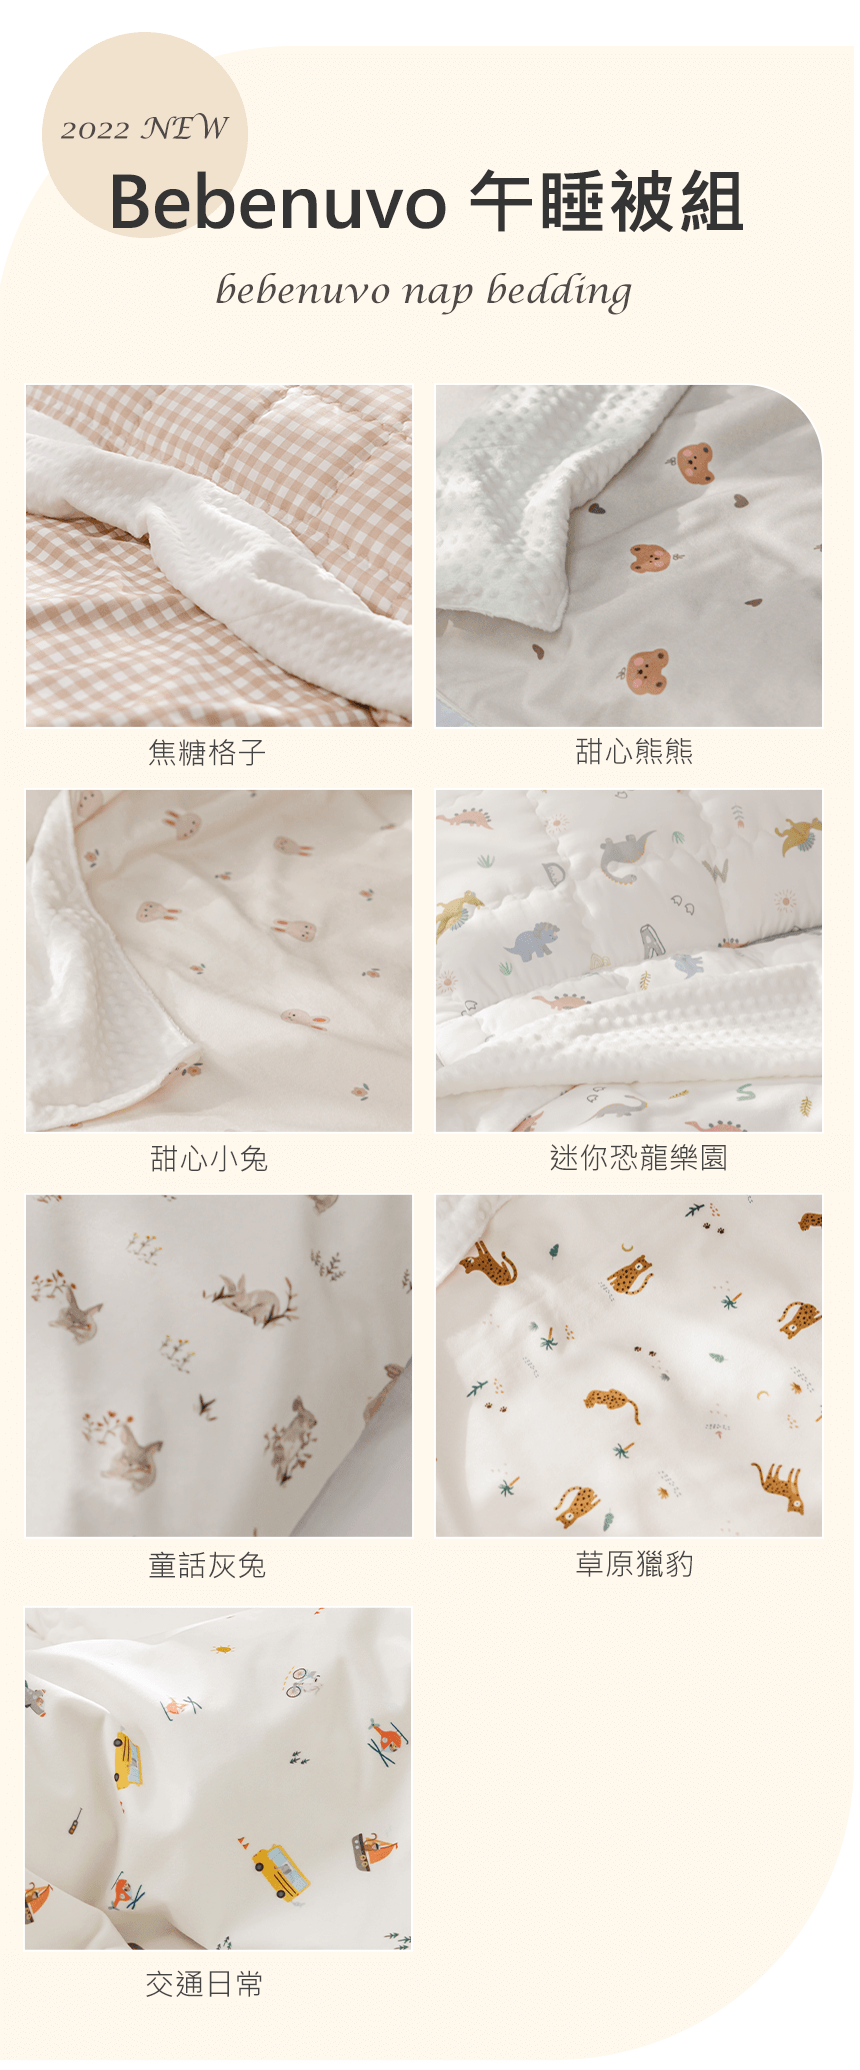 韓國睡墊 幼兒園睡袋 幼兒園睡墊 推薦 睡袋推薦 韓國睡墊 涼被推薦 42